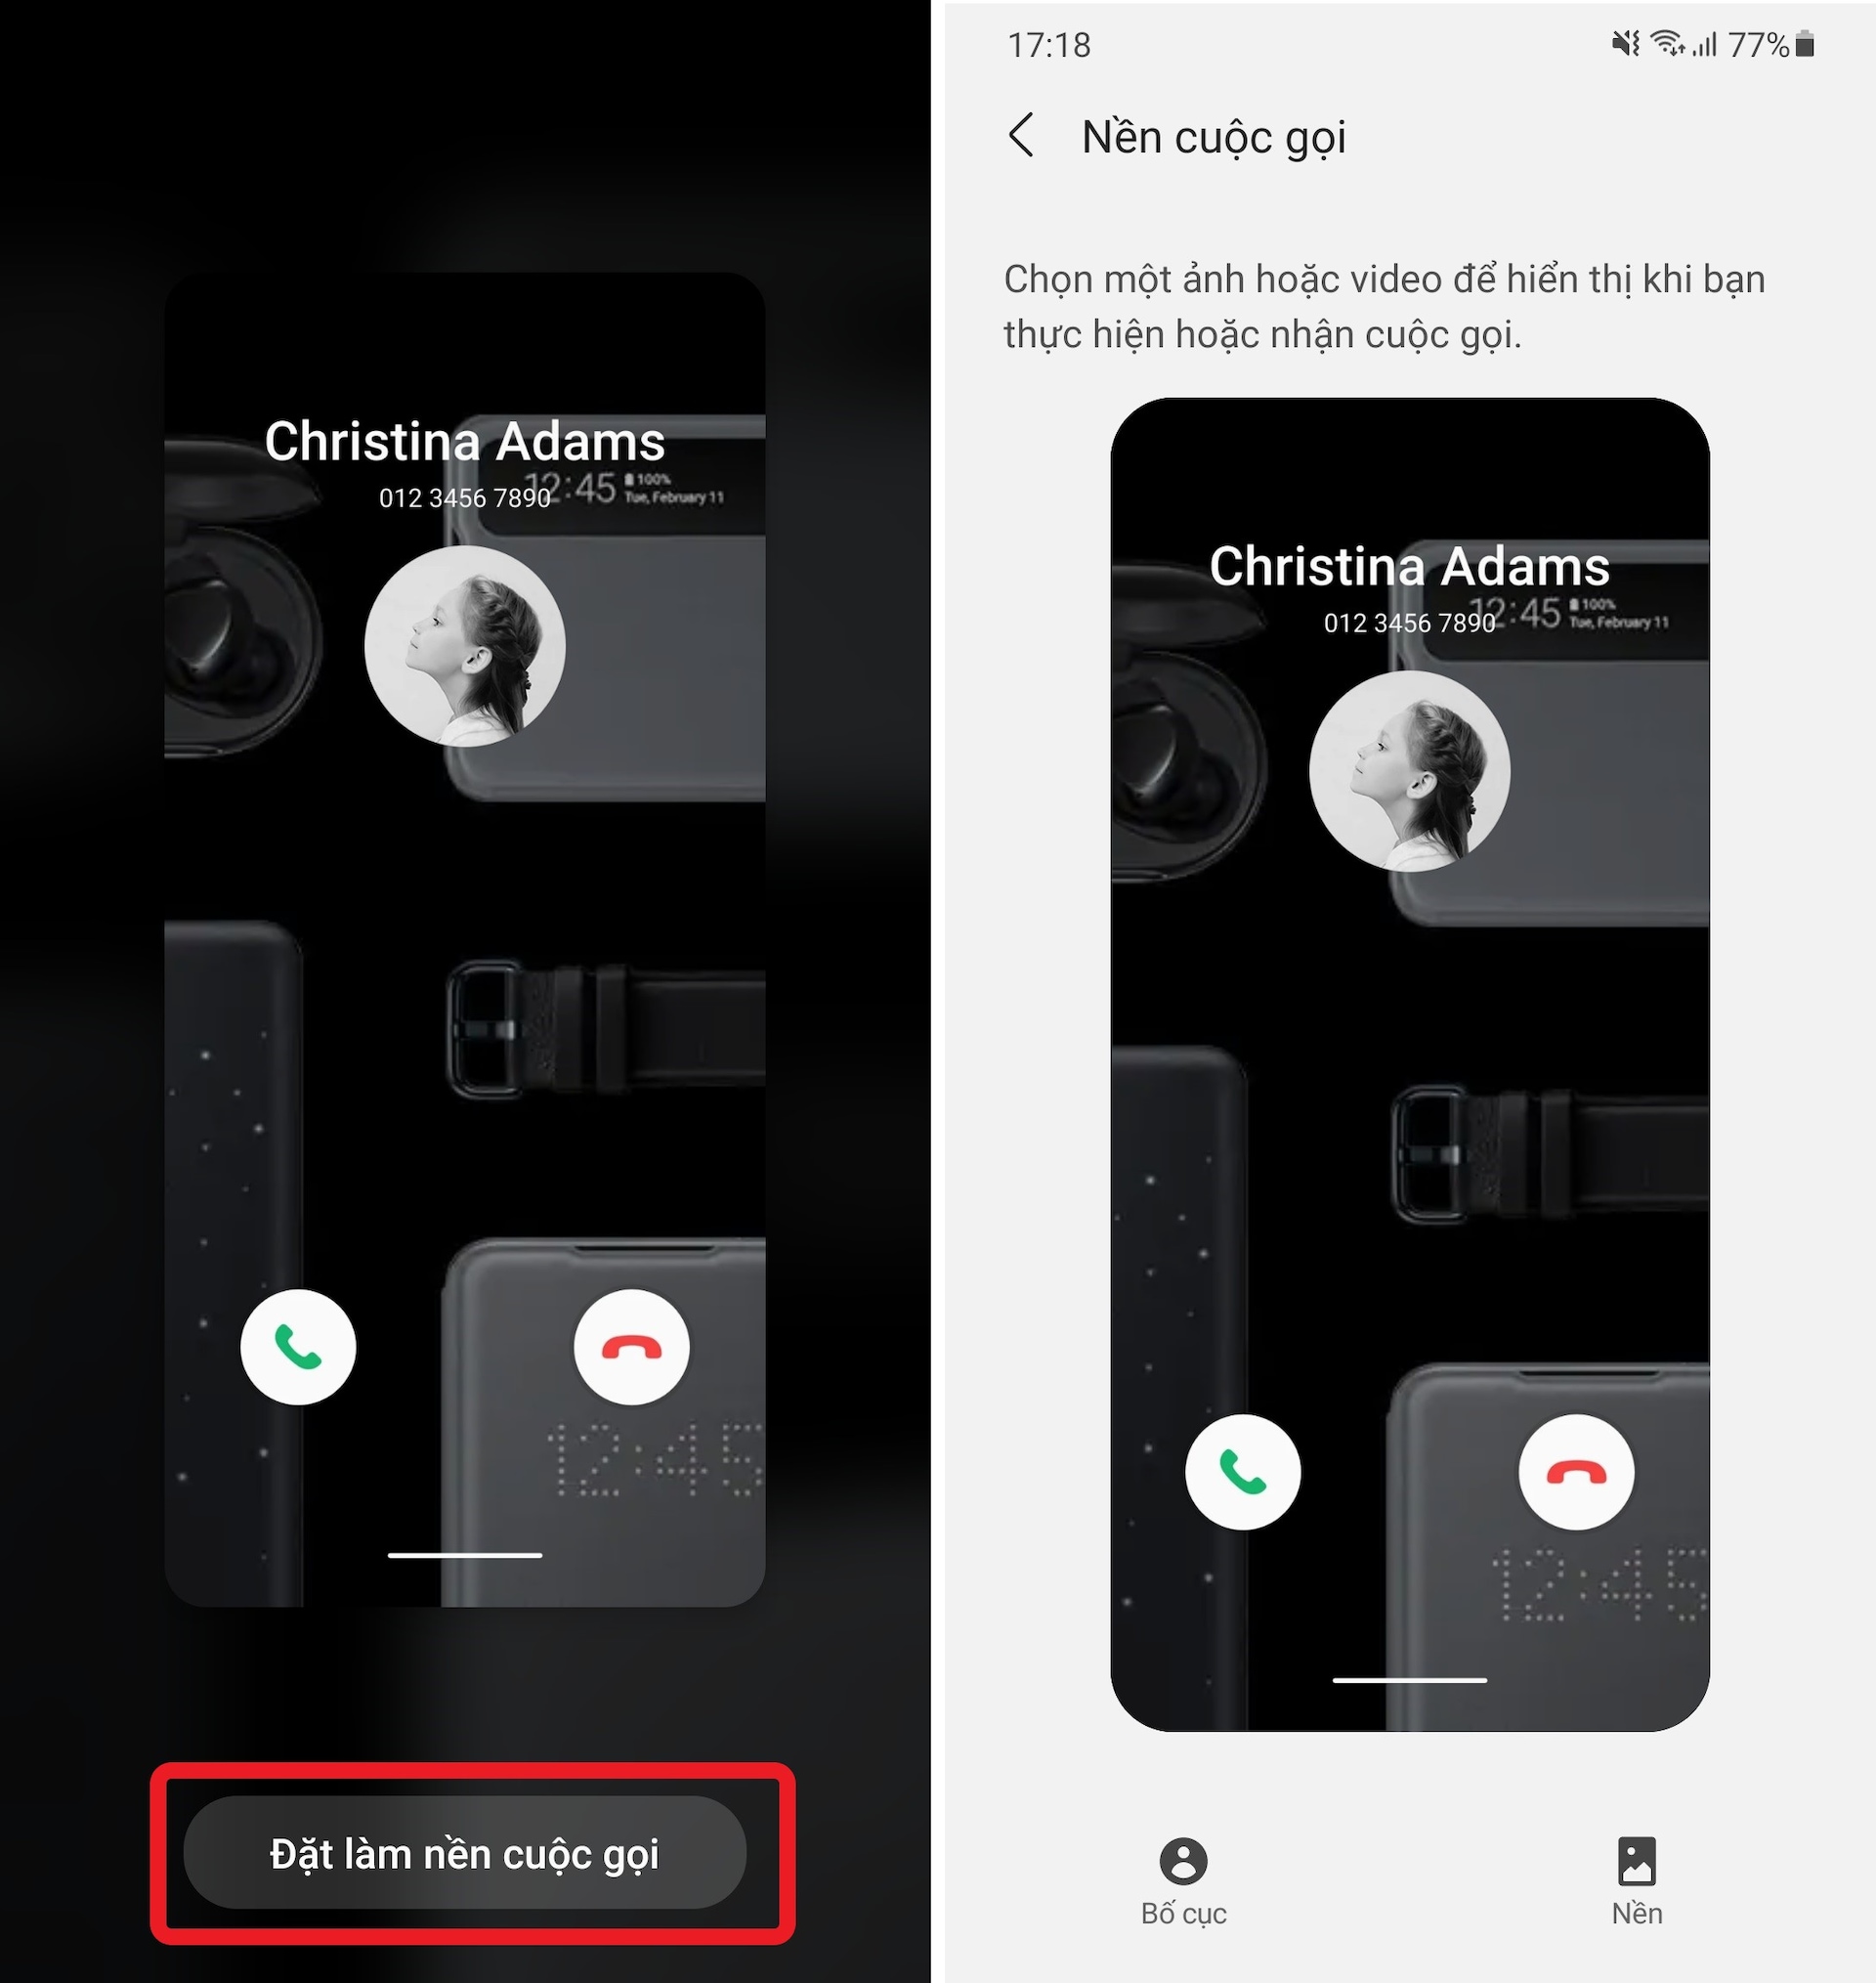 Hãy tận hưởng trải nghiệm giao diện cuộc gọi mới của Android 11 và thấy sự khác biệt từ cái nhìn đầu tiên trên điện thoại của bạn. Thiết kế mới nổi bật, cập nhật tính năng nhắn tin, đồng bộ hóa dữ liệu, ghi âm cuộc gọi, vv. Đừng bỏ lỡ hình ảnh liên quan đến giao diện cuộc gọi này!